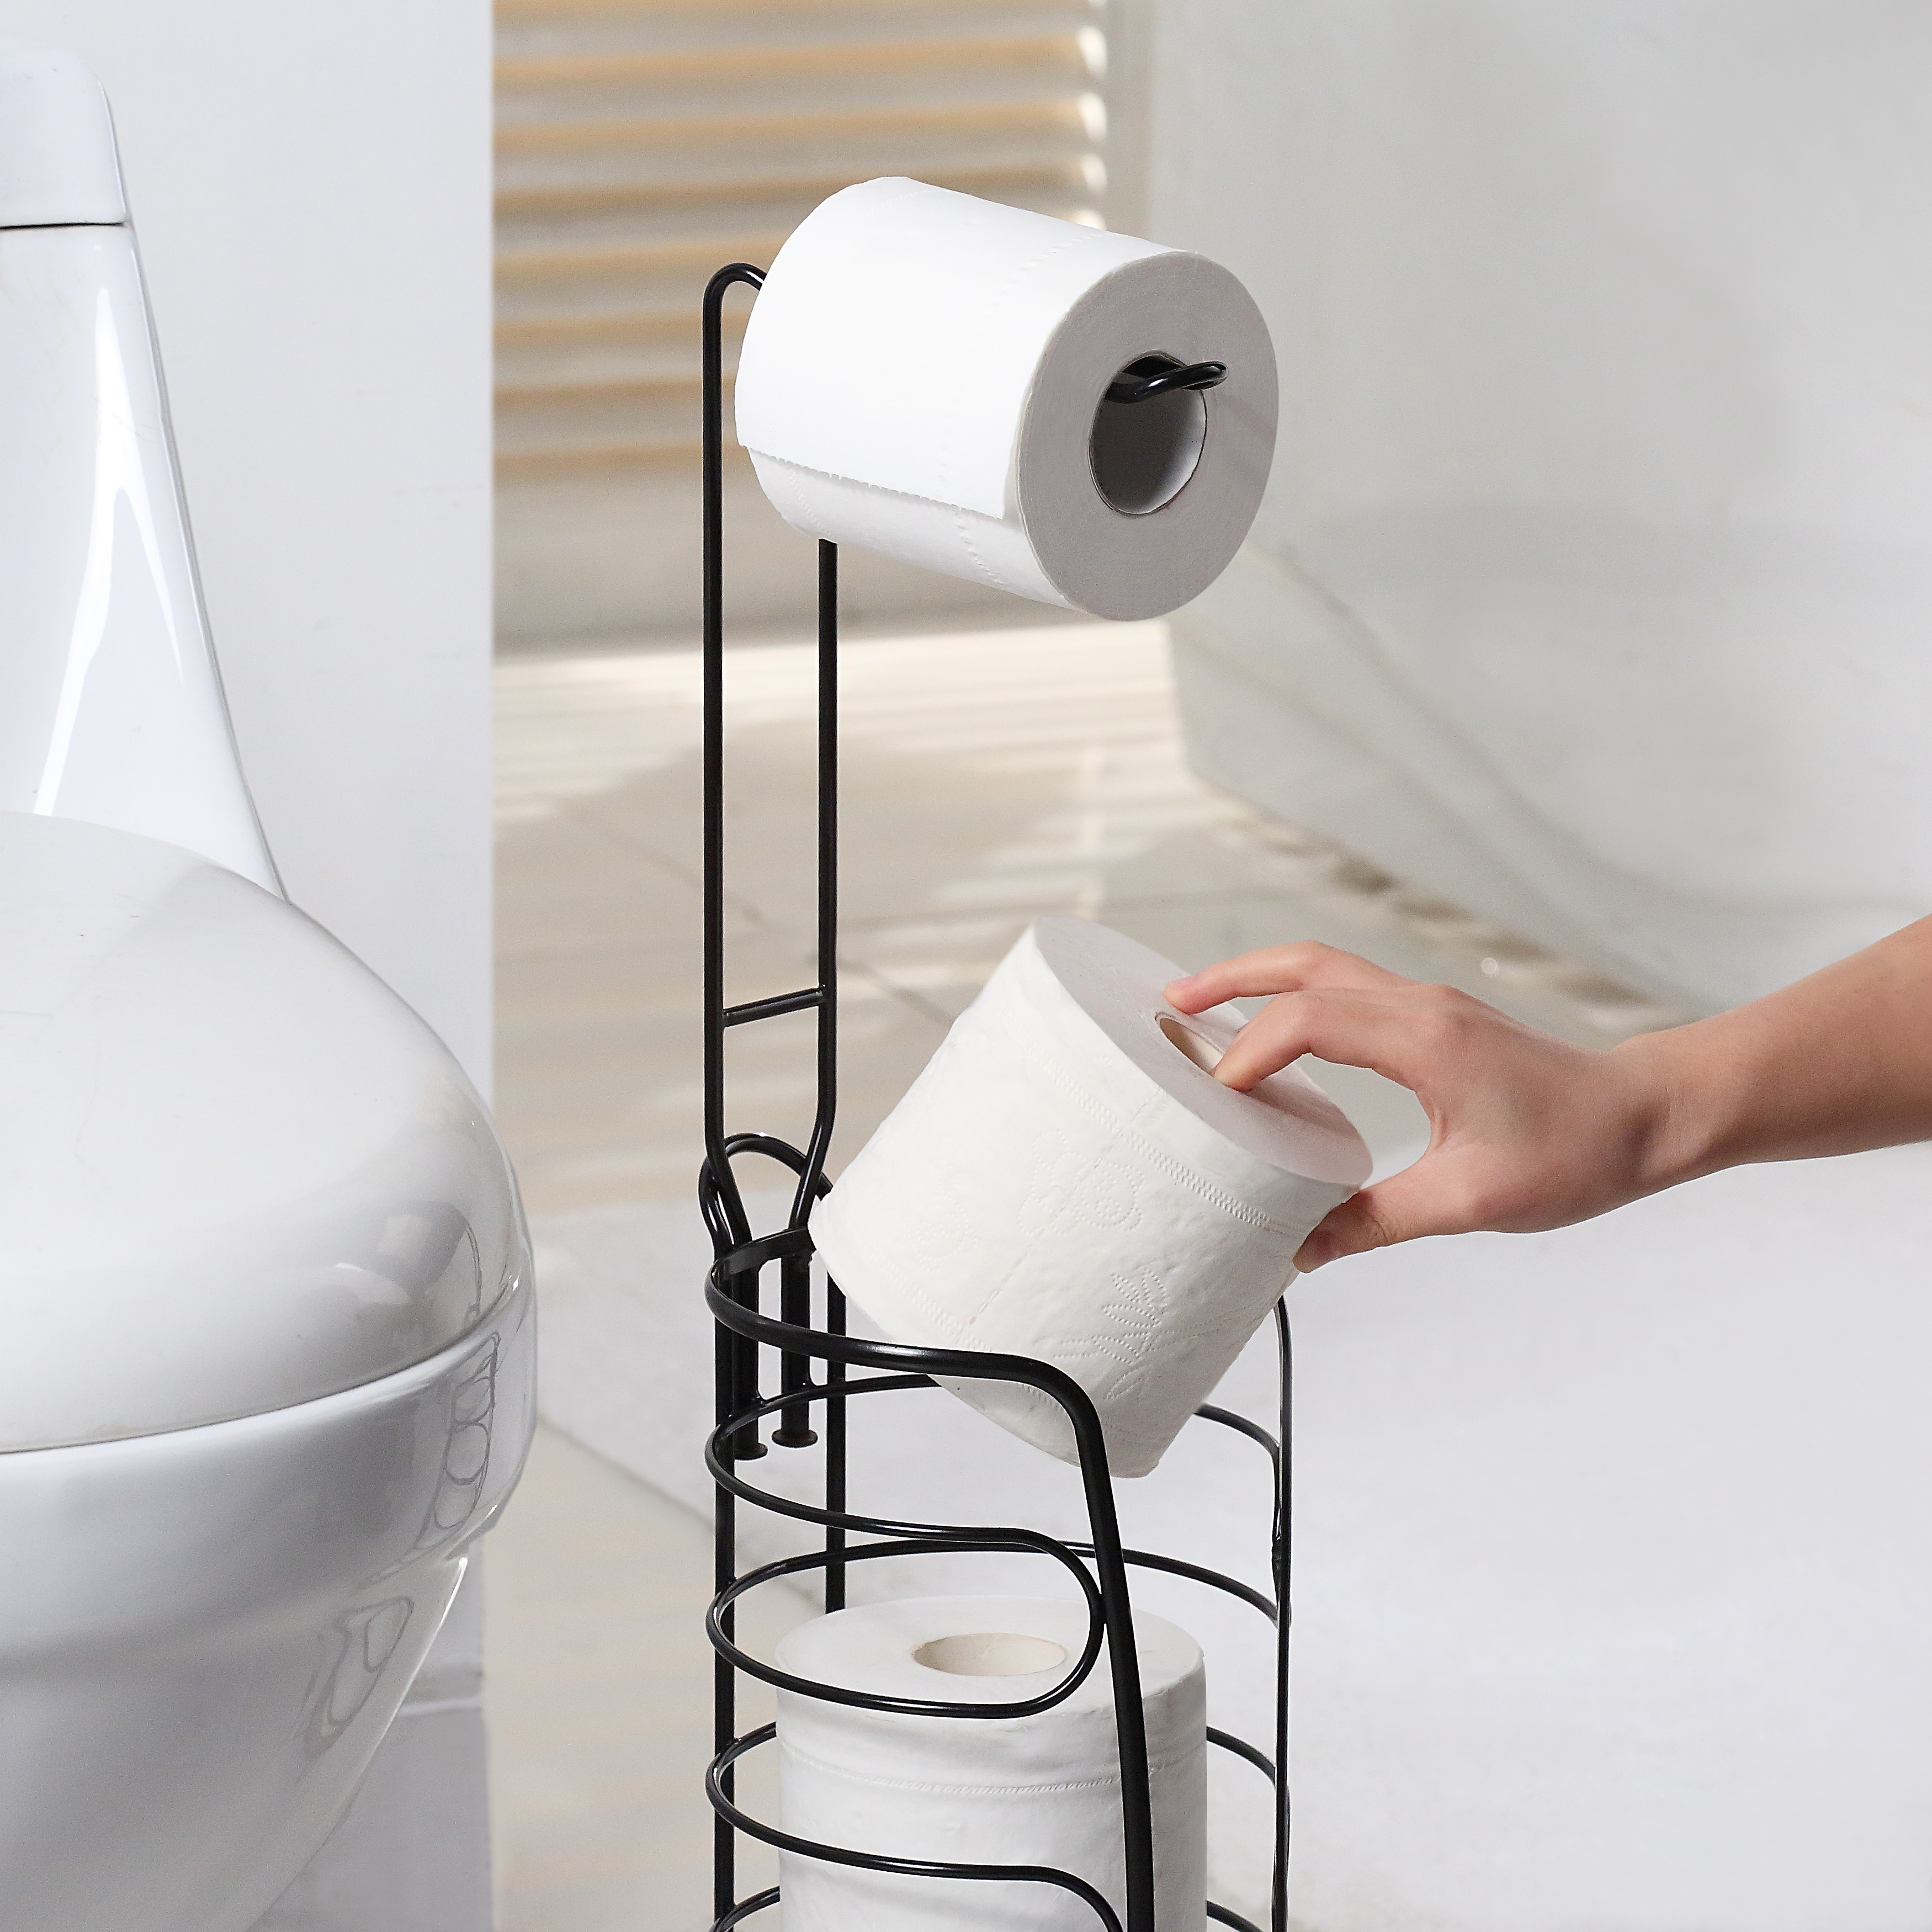 SunnyPoint Freestanding Toilet Paper Holder